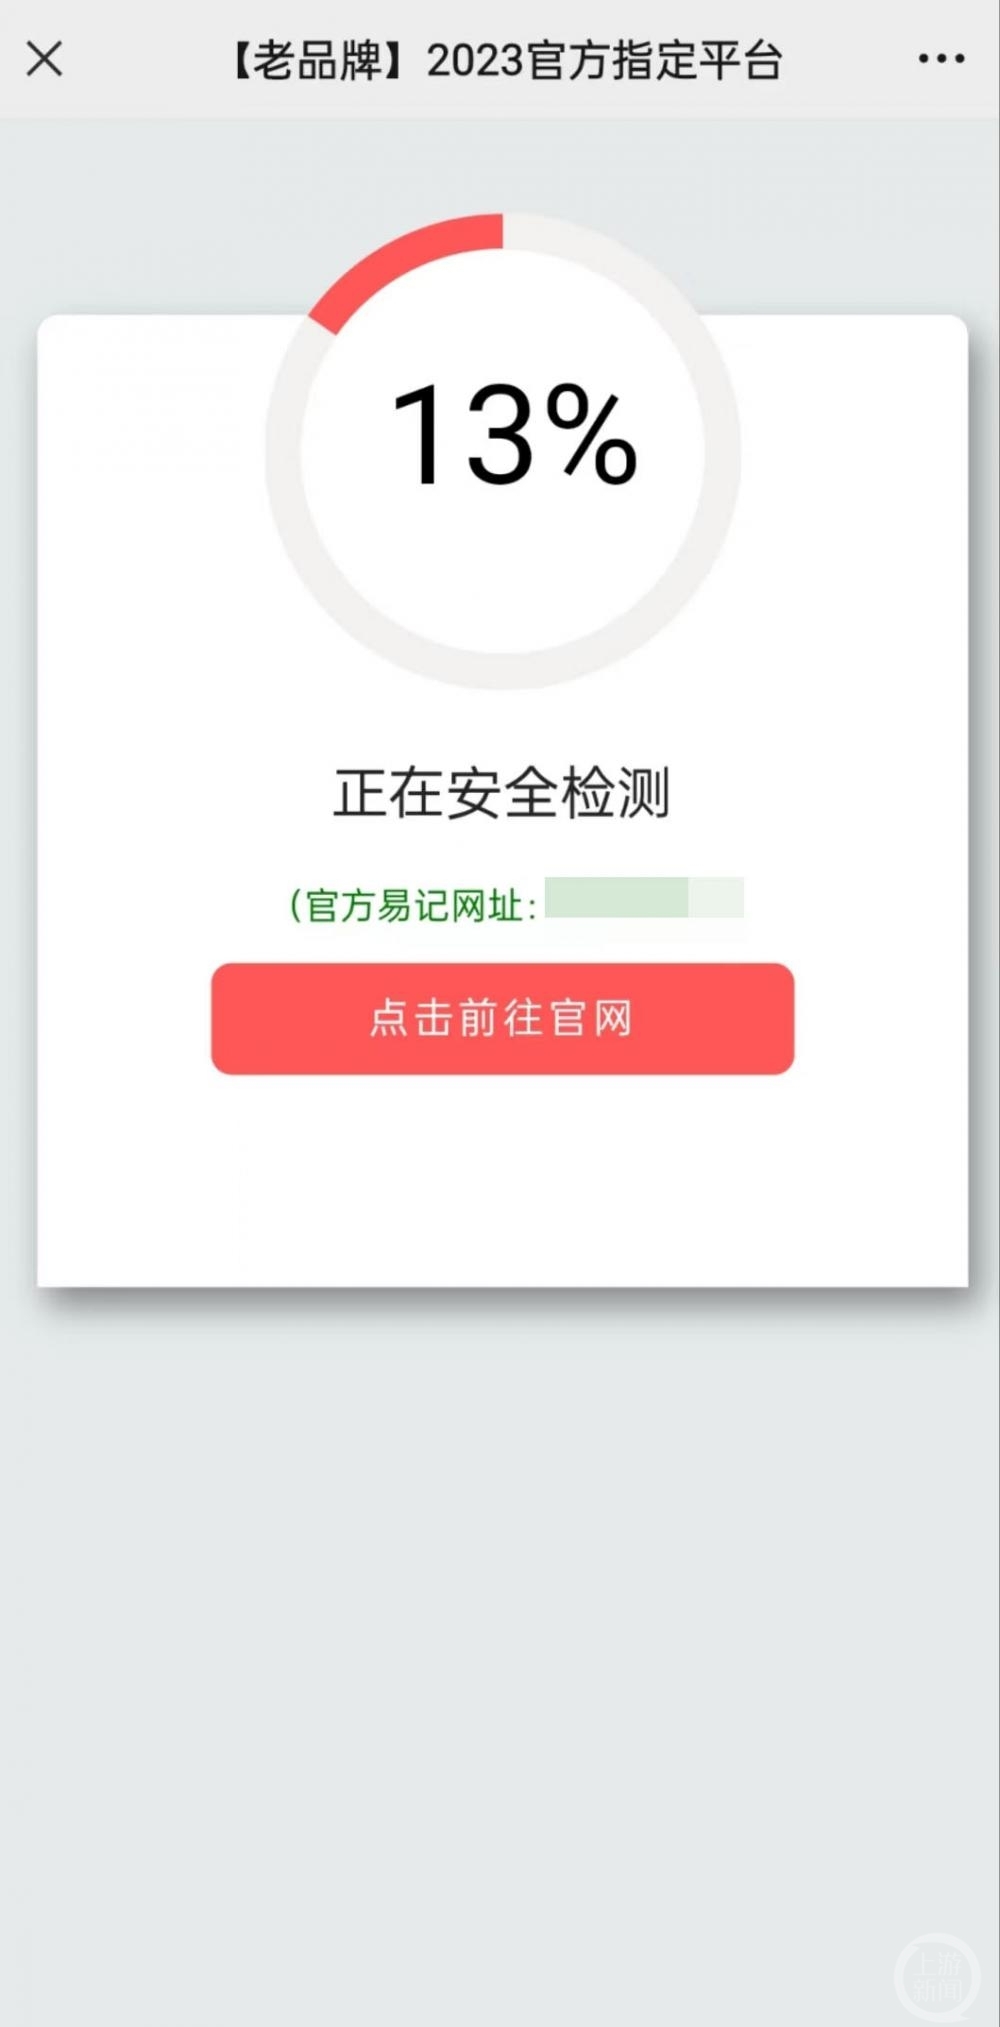 ▲点击郑州政协微信公号后跳转赌博网站。